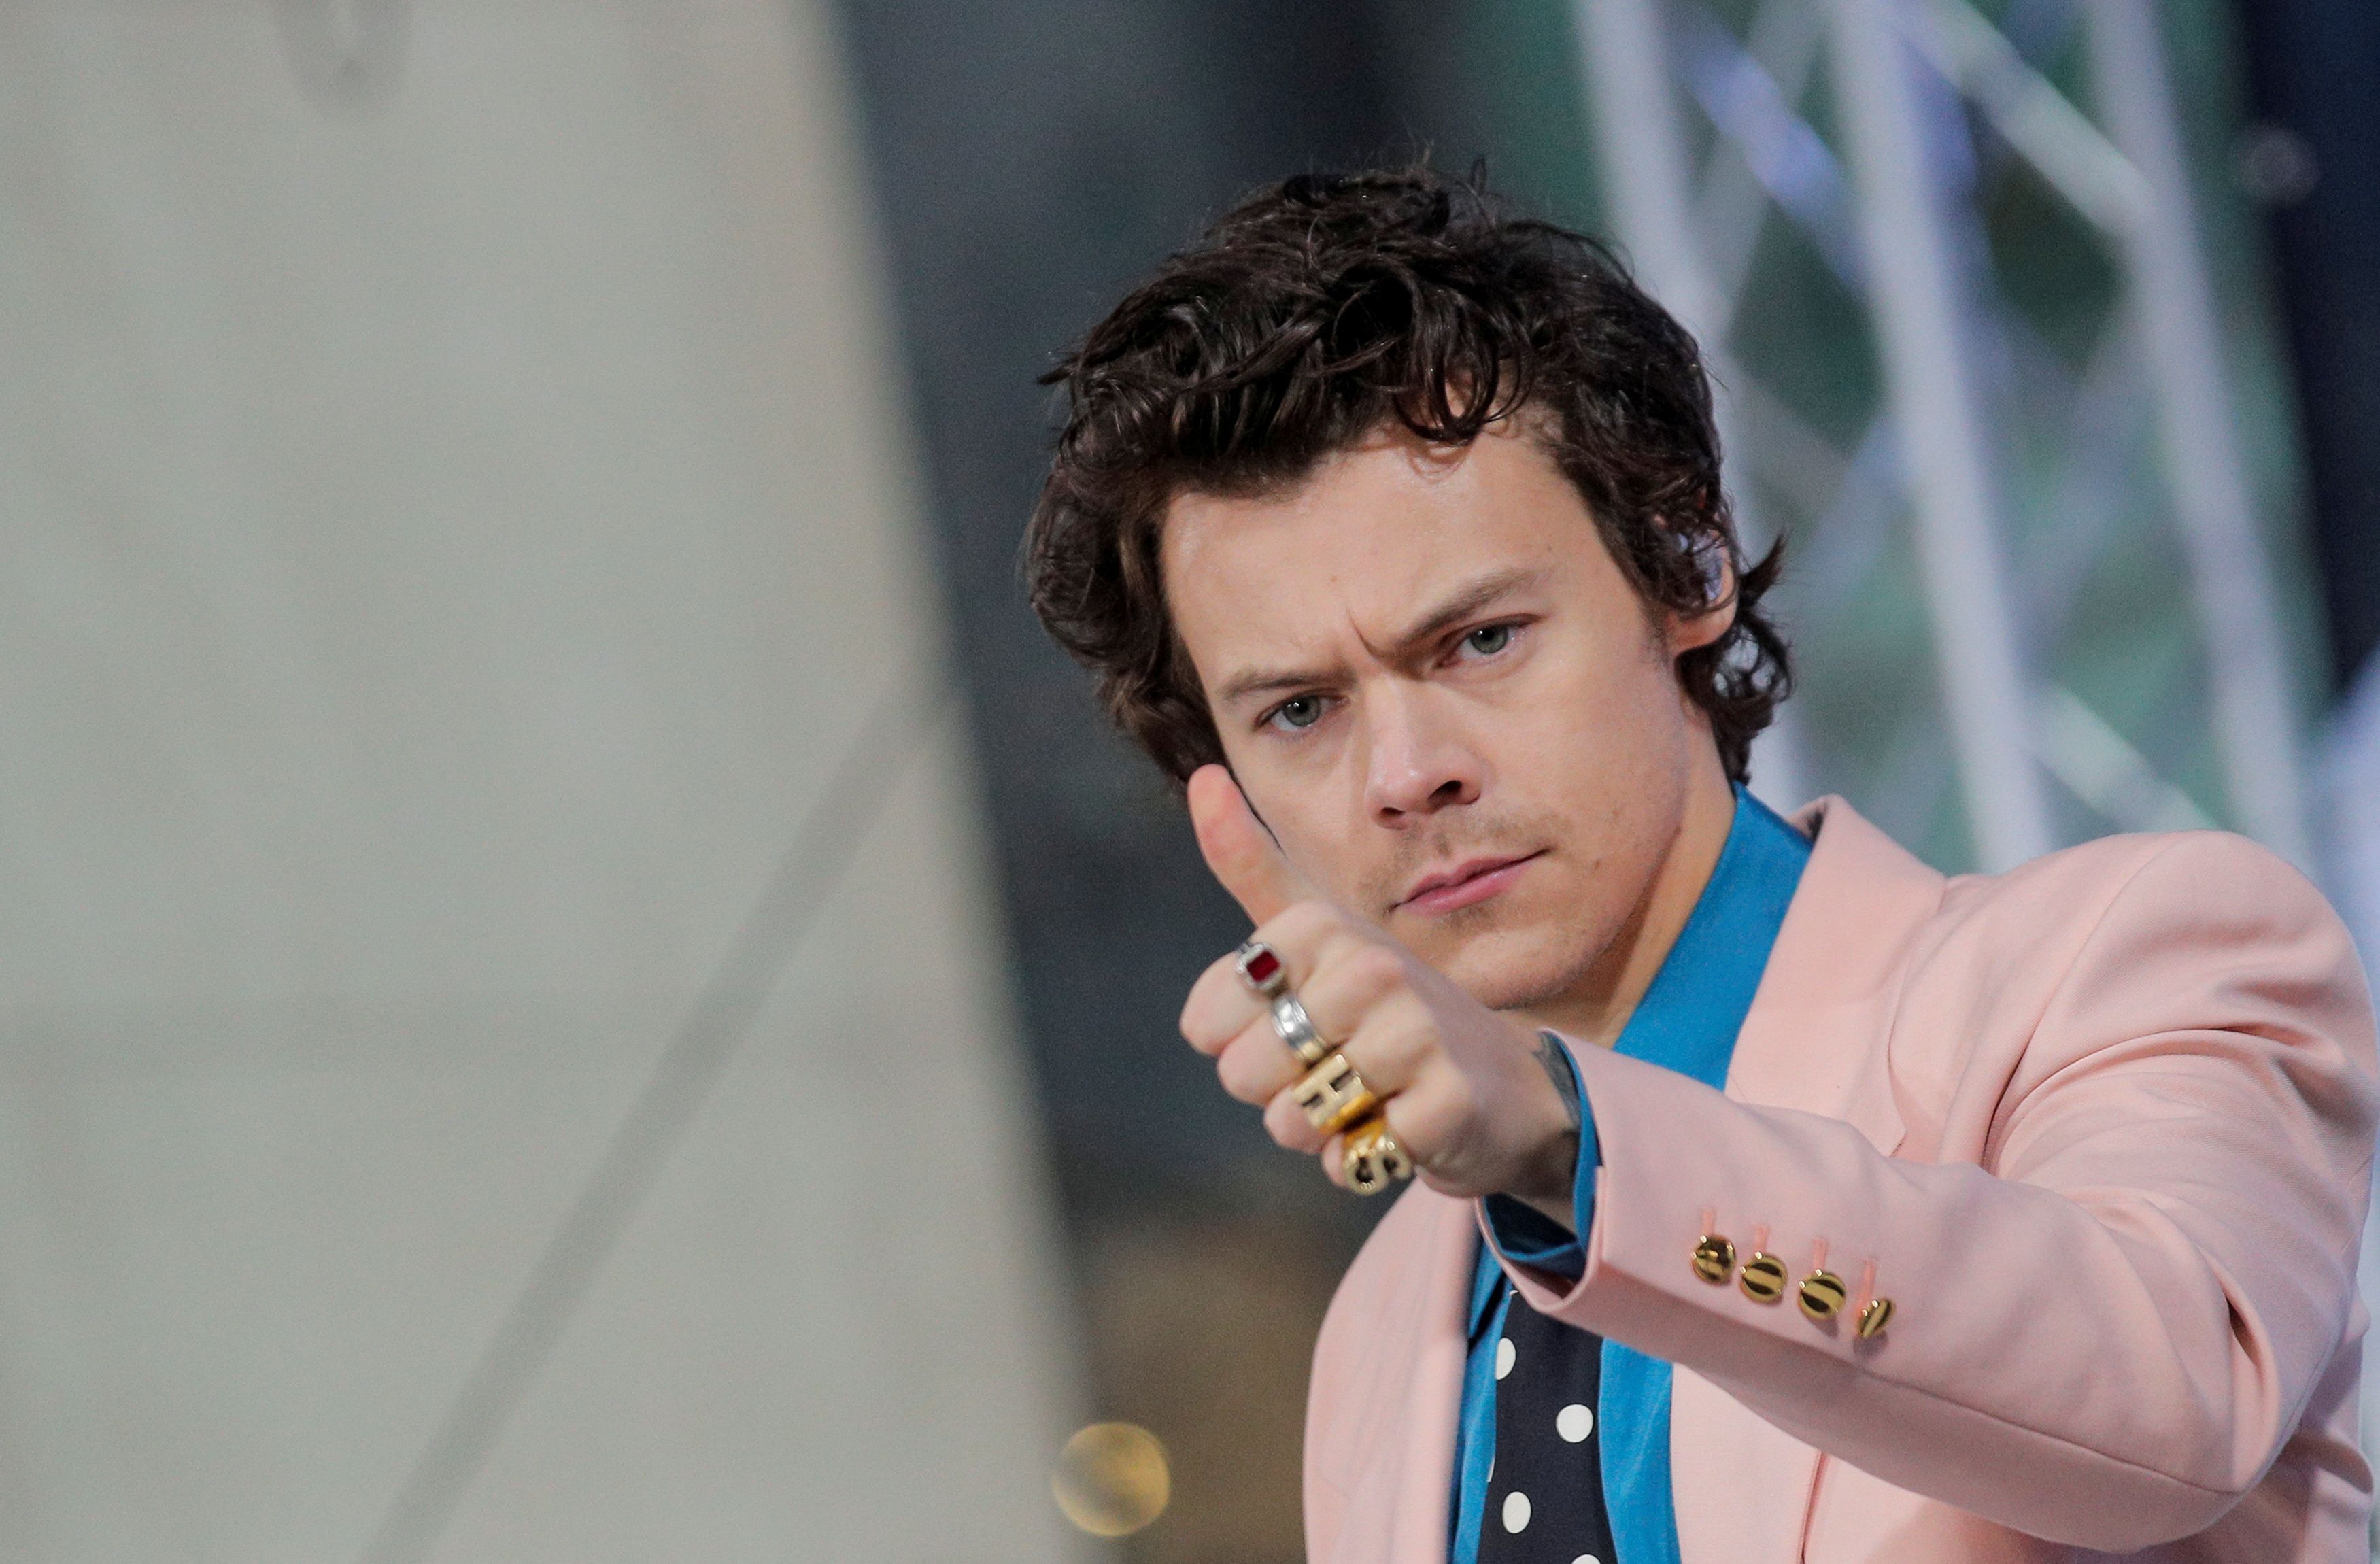 FILE PHOTO: El cantante Harry Styles actúa en el programa 'Today' de NBC en la ciudad de Nueva York, EE. UU., 26 de febrero de 2020. REUTERS